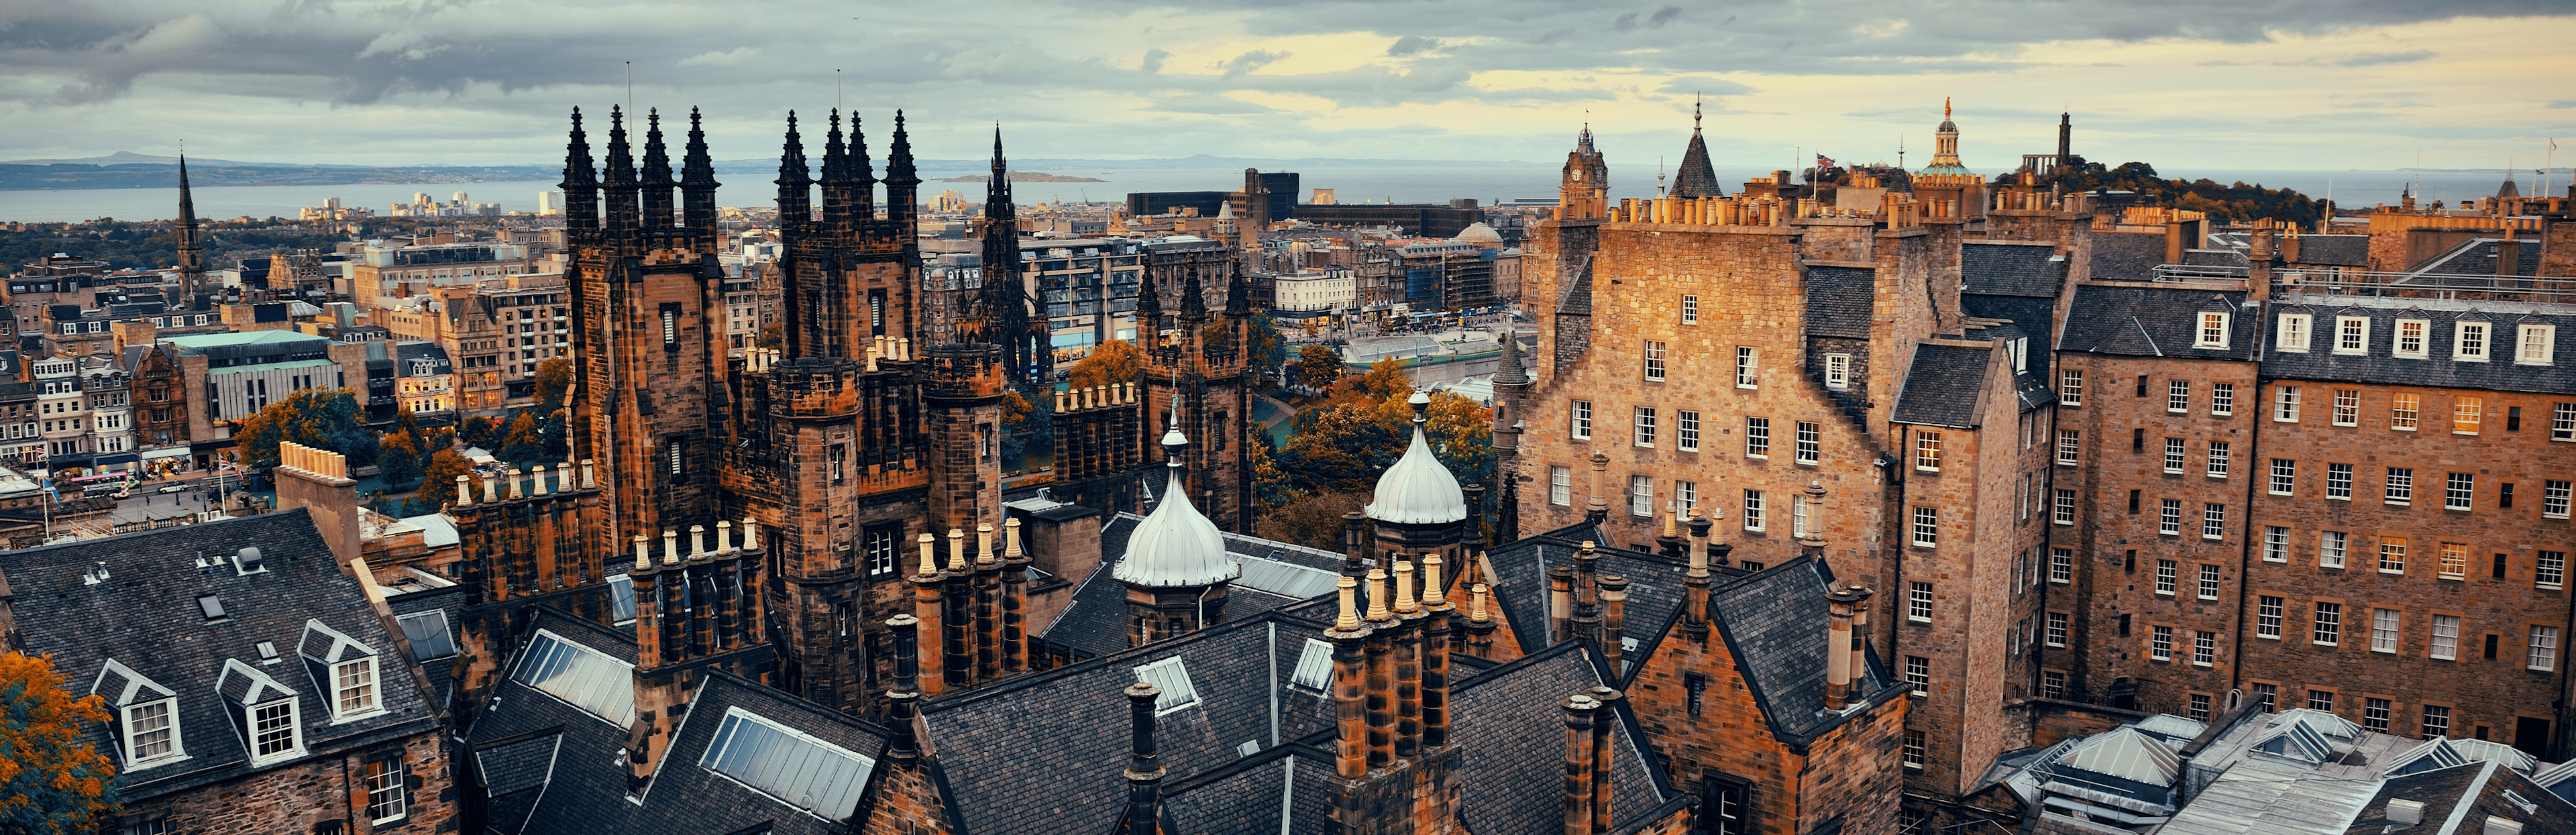 Edinburgh uitzicht over het centrum